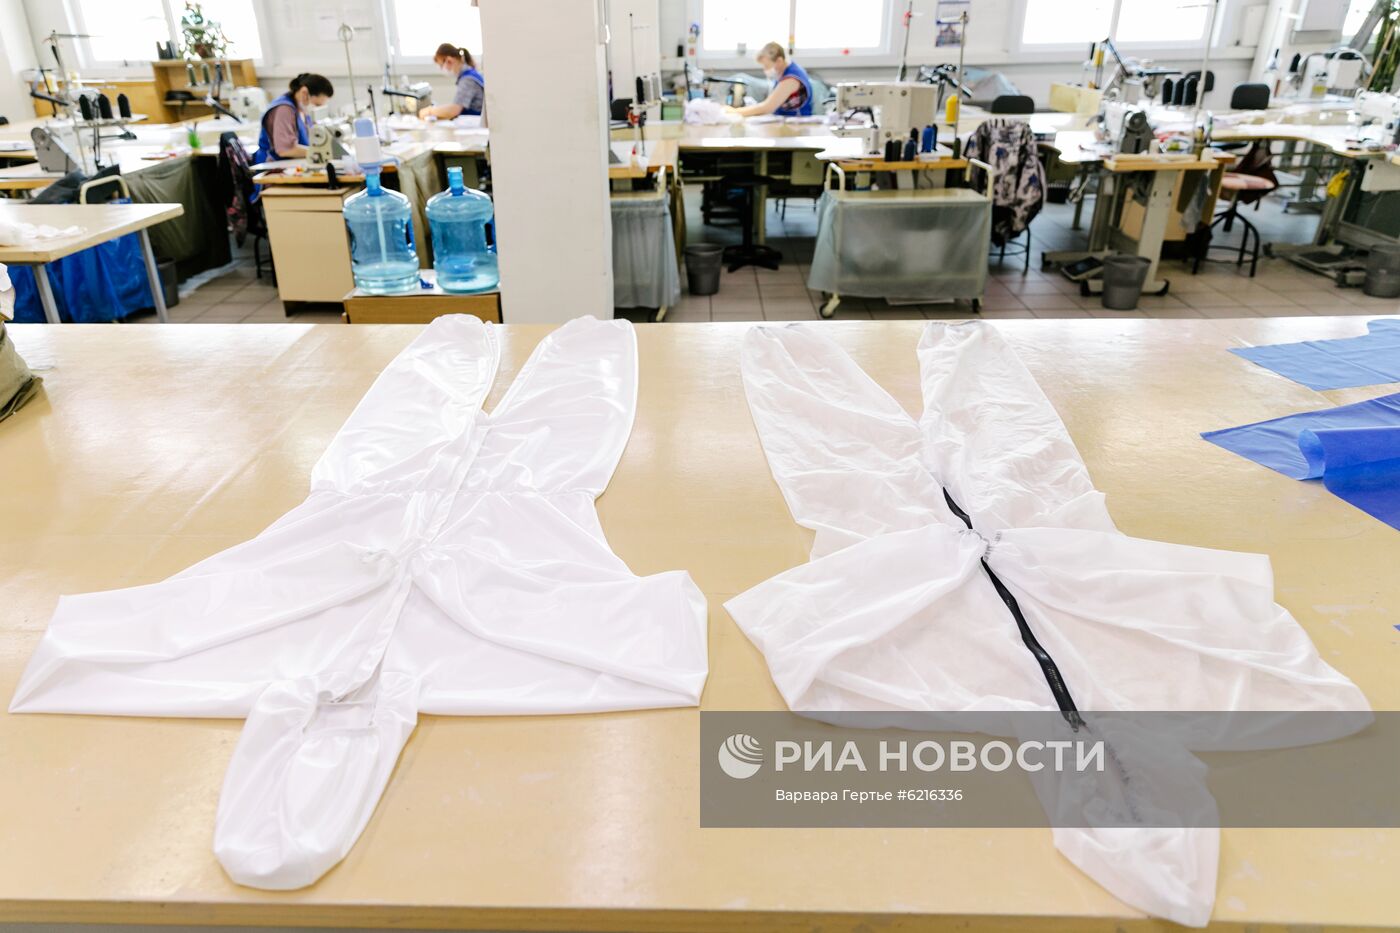 Парашютный завод "Полет" начал шить маски и защитные костюмы